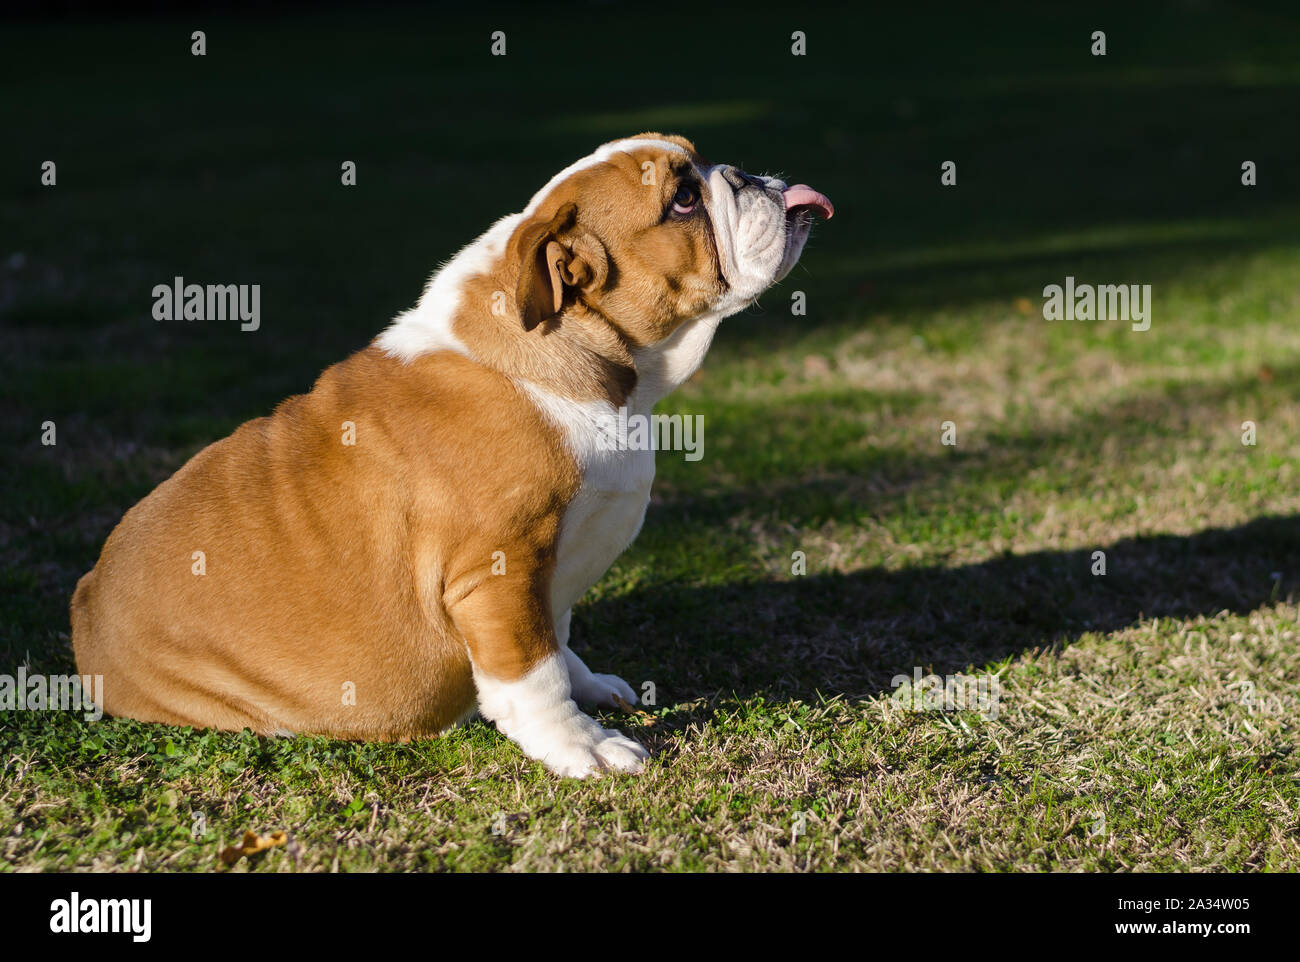 Inglese bianco e marrone di bulldog seduta sul prato con la lingua fuori Foto Stock